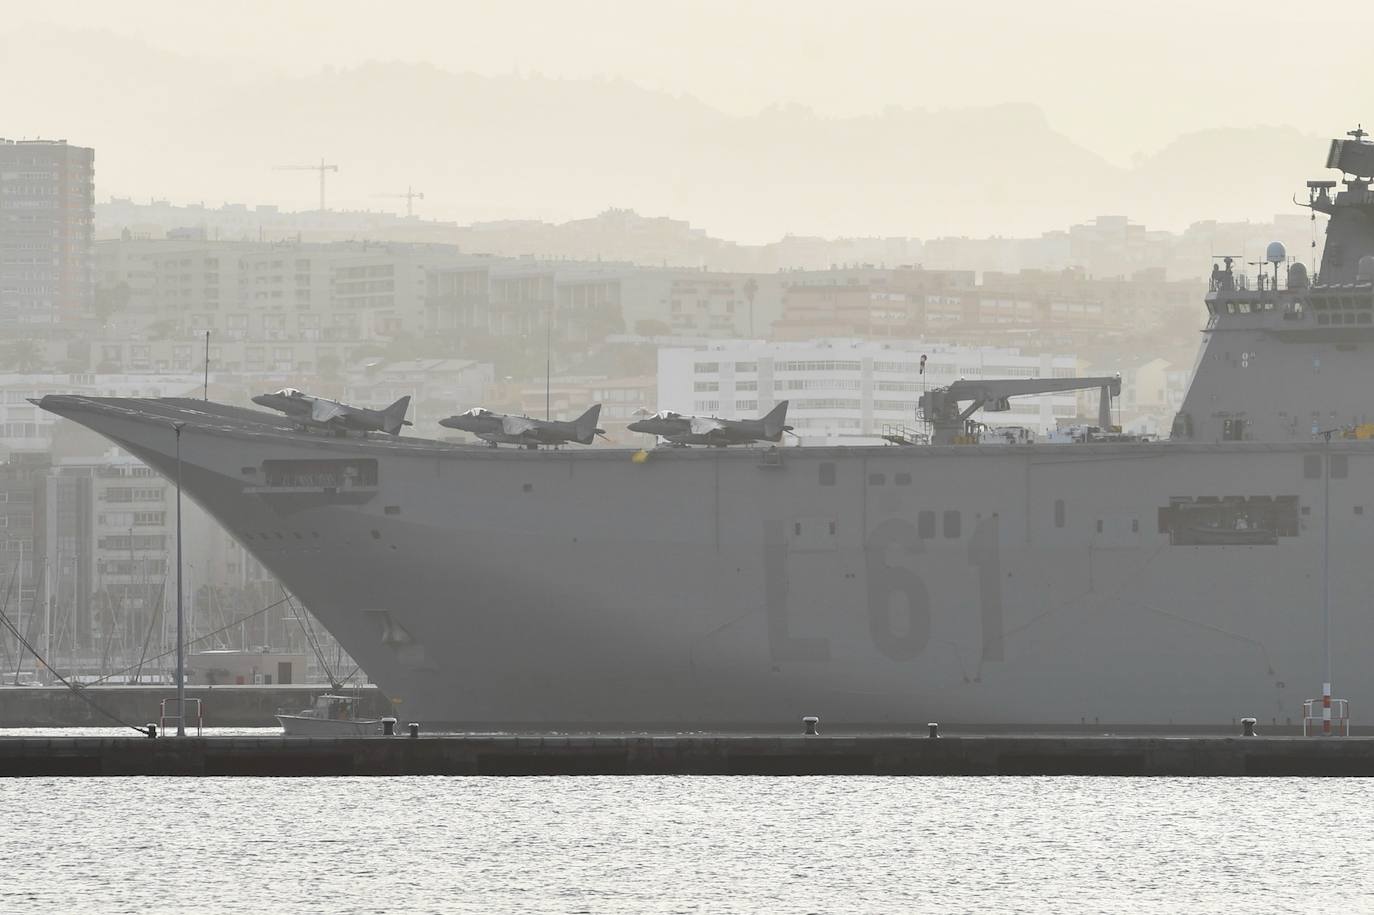 El buque portaeronaves 'Juan Carlos I', de maniobras en Gran Canaria